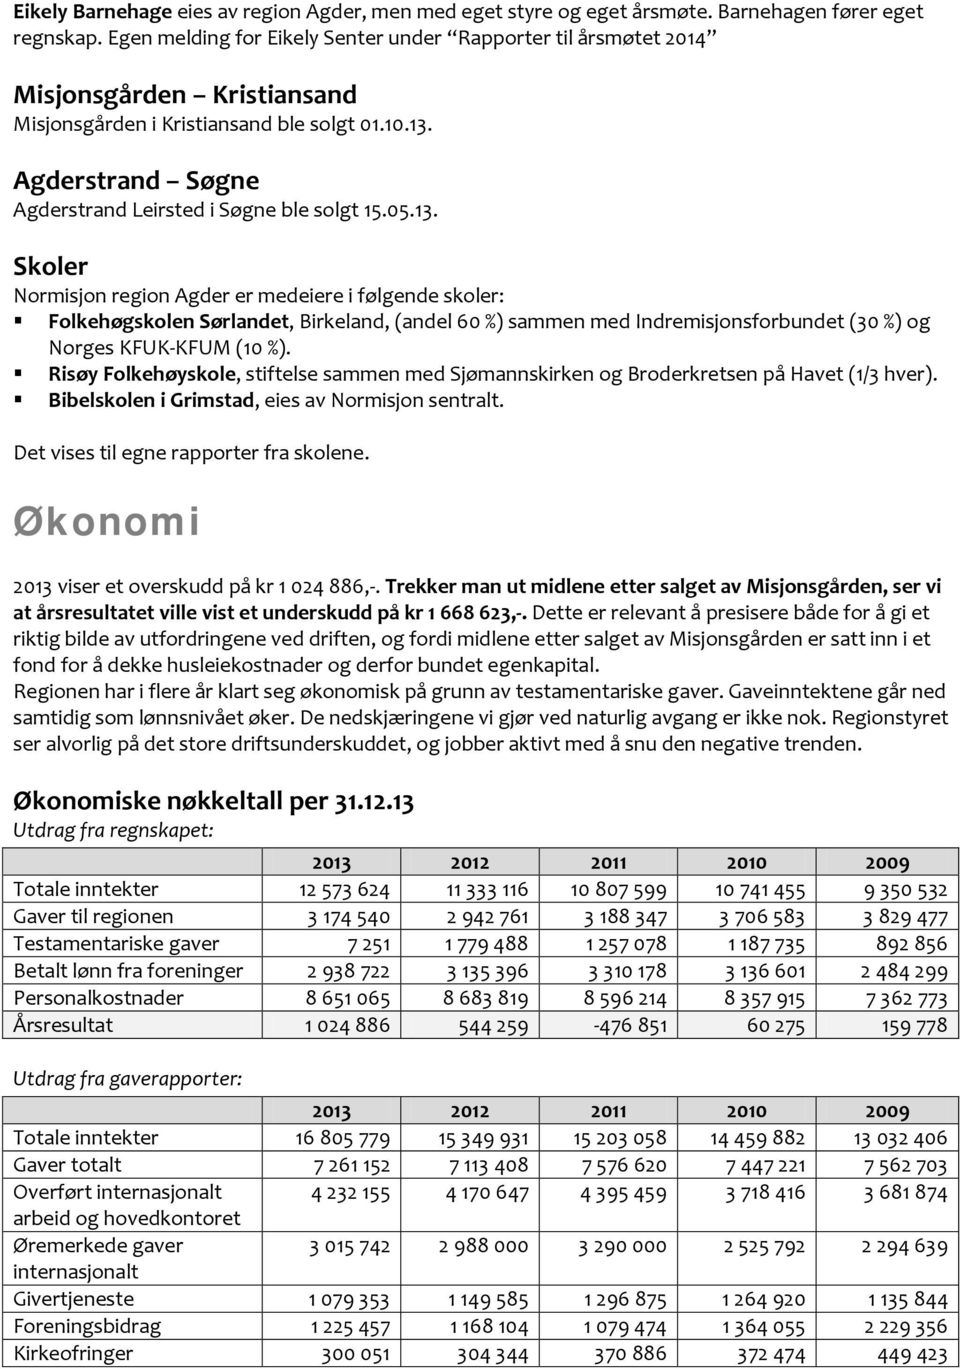 Agderstrand Søgne Agderstrand Leirsted i Søgne ble solgt 15.05.13.